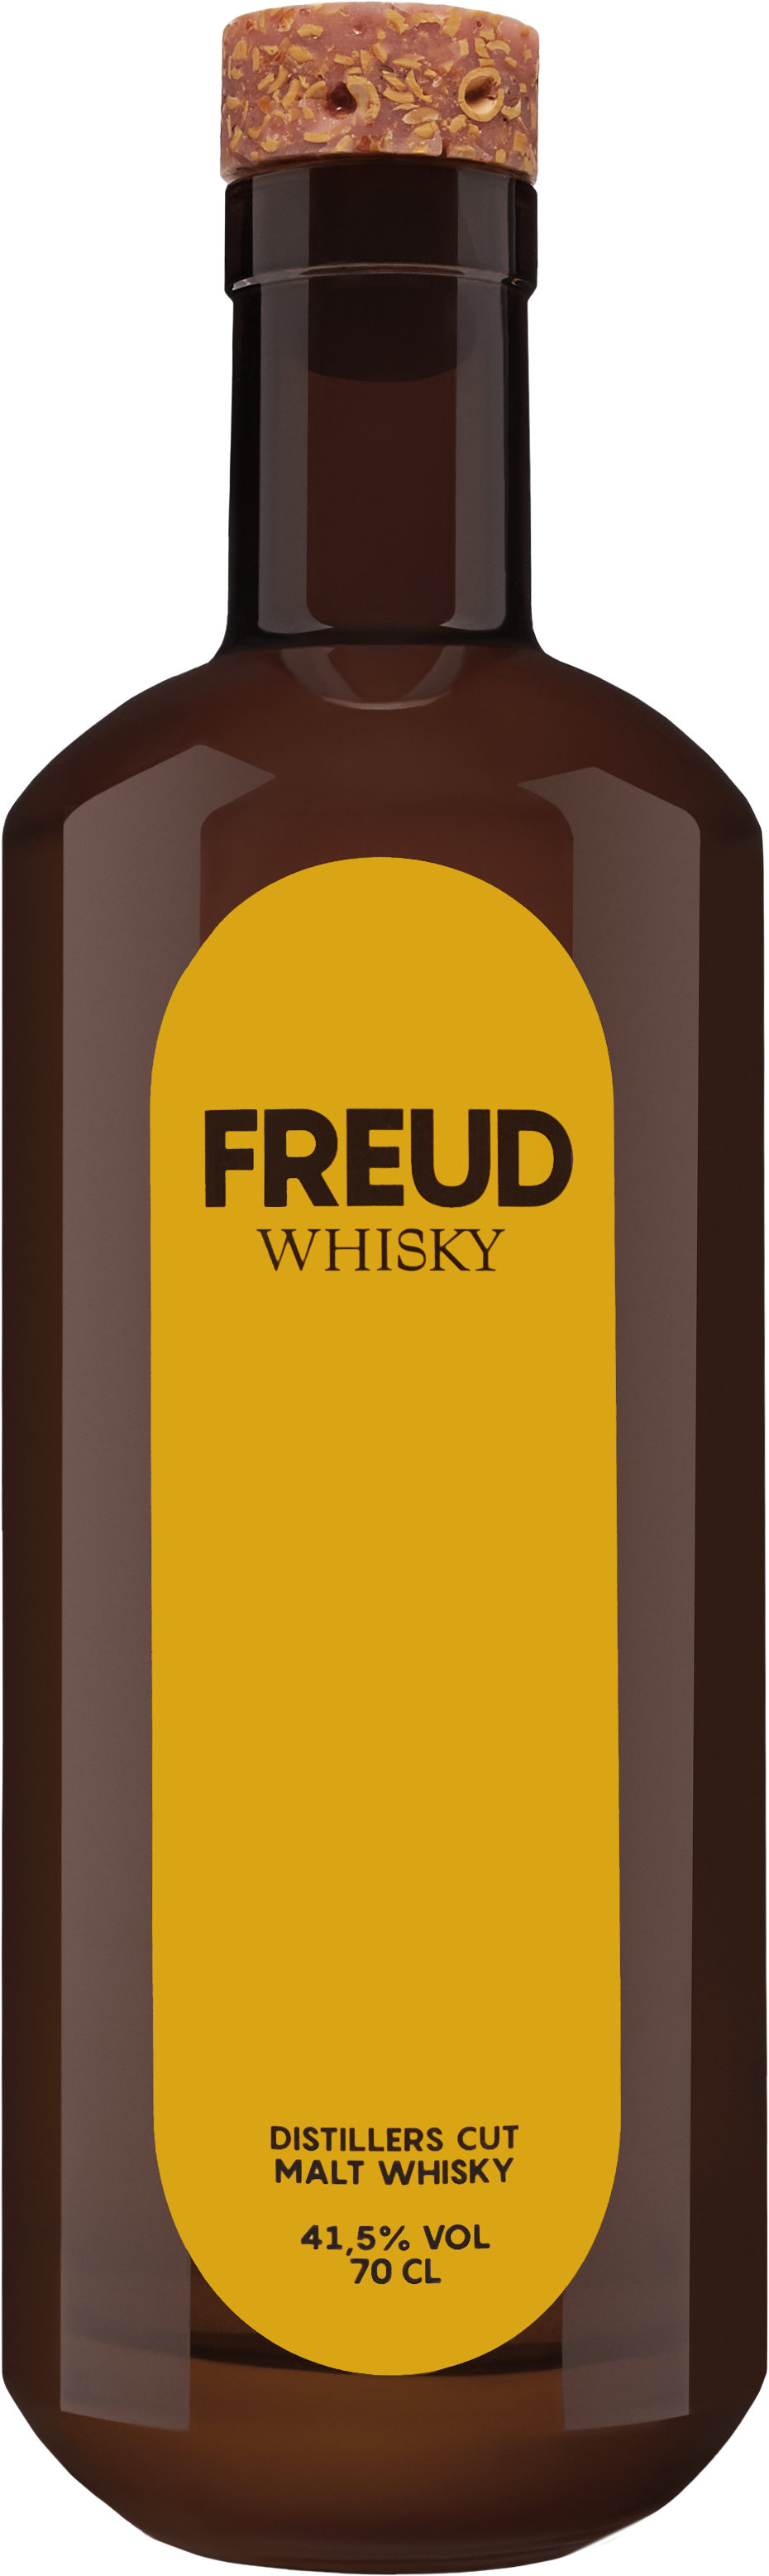 Freud Malt Whisky Dist. Cut Deutschland 41,5% 0,7l